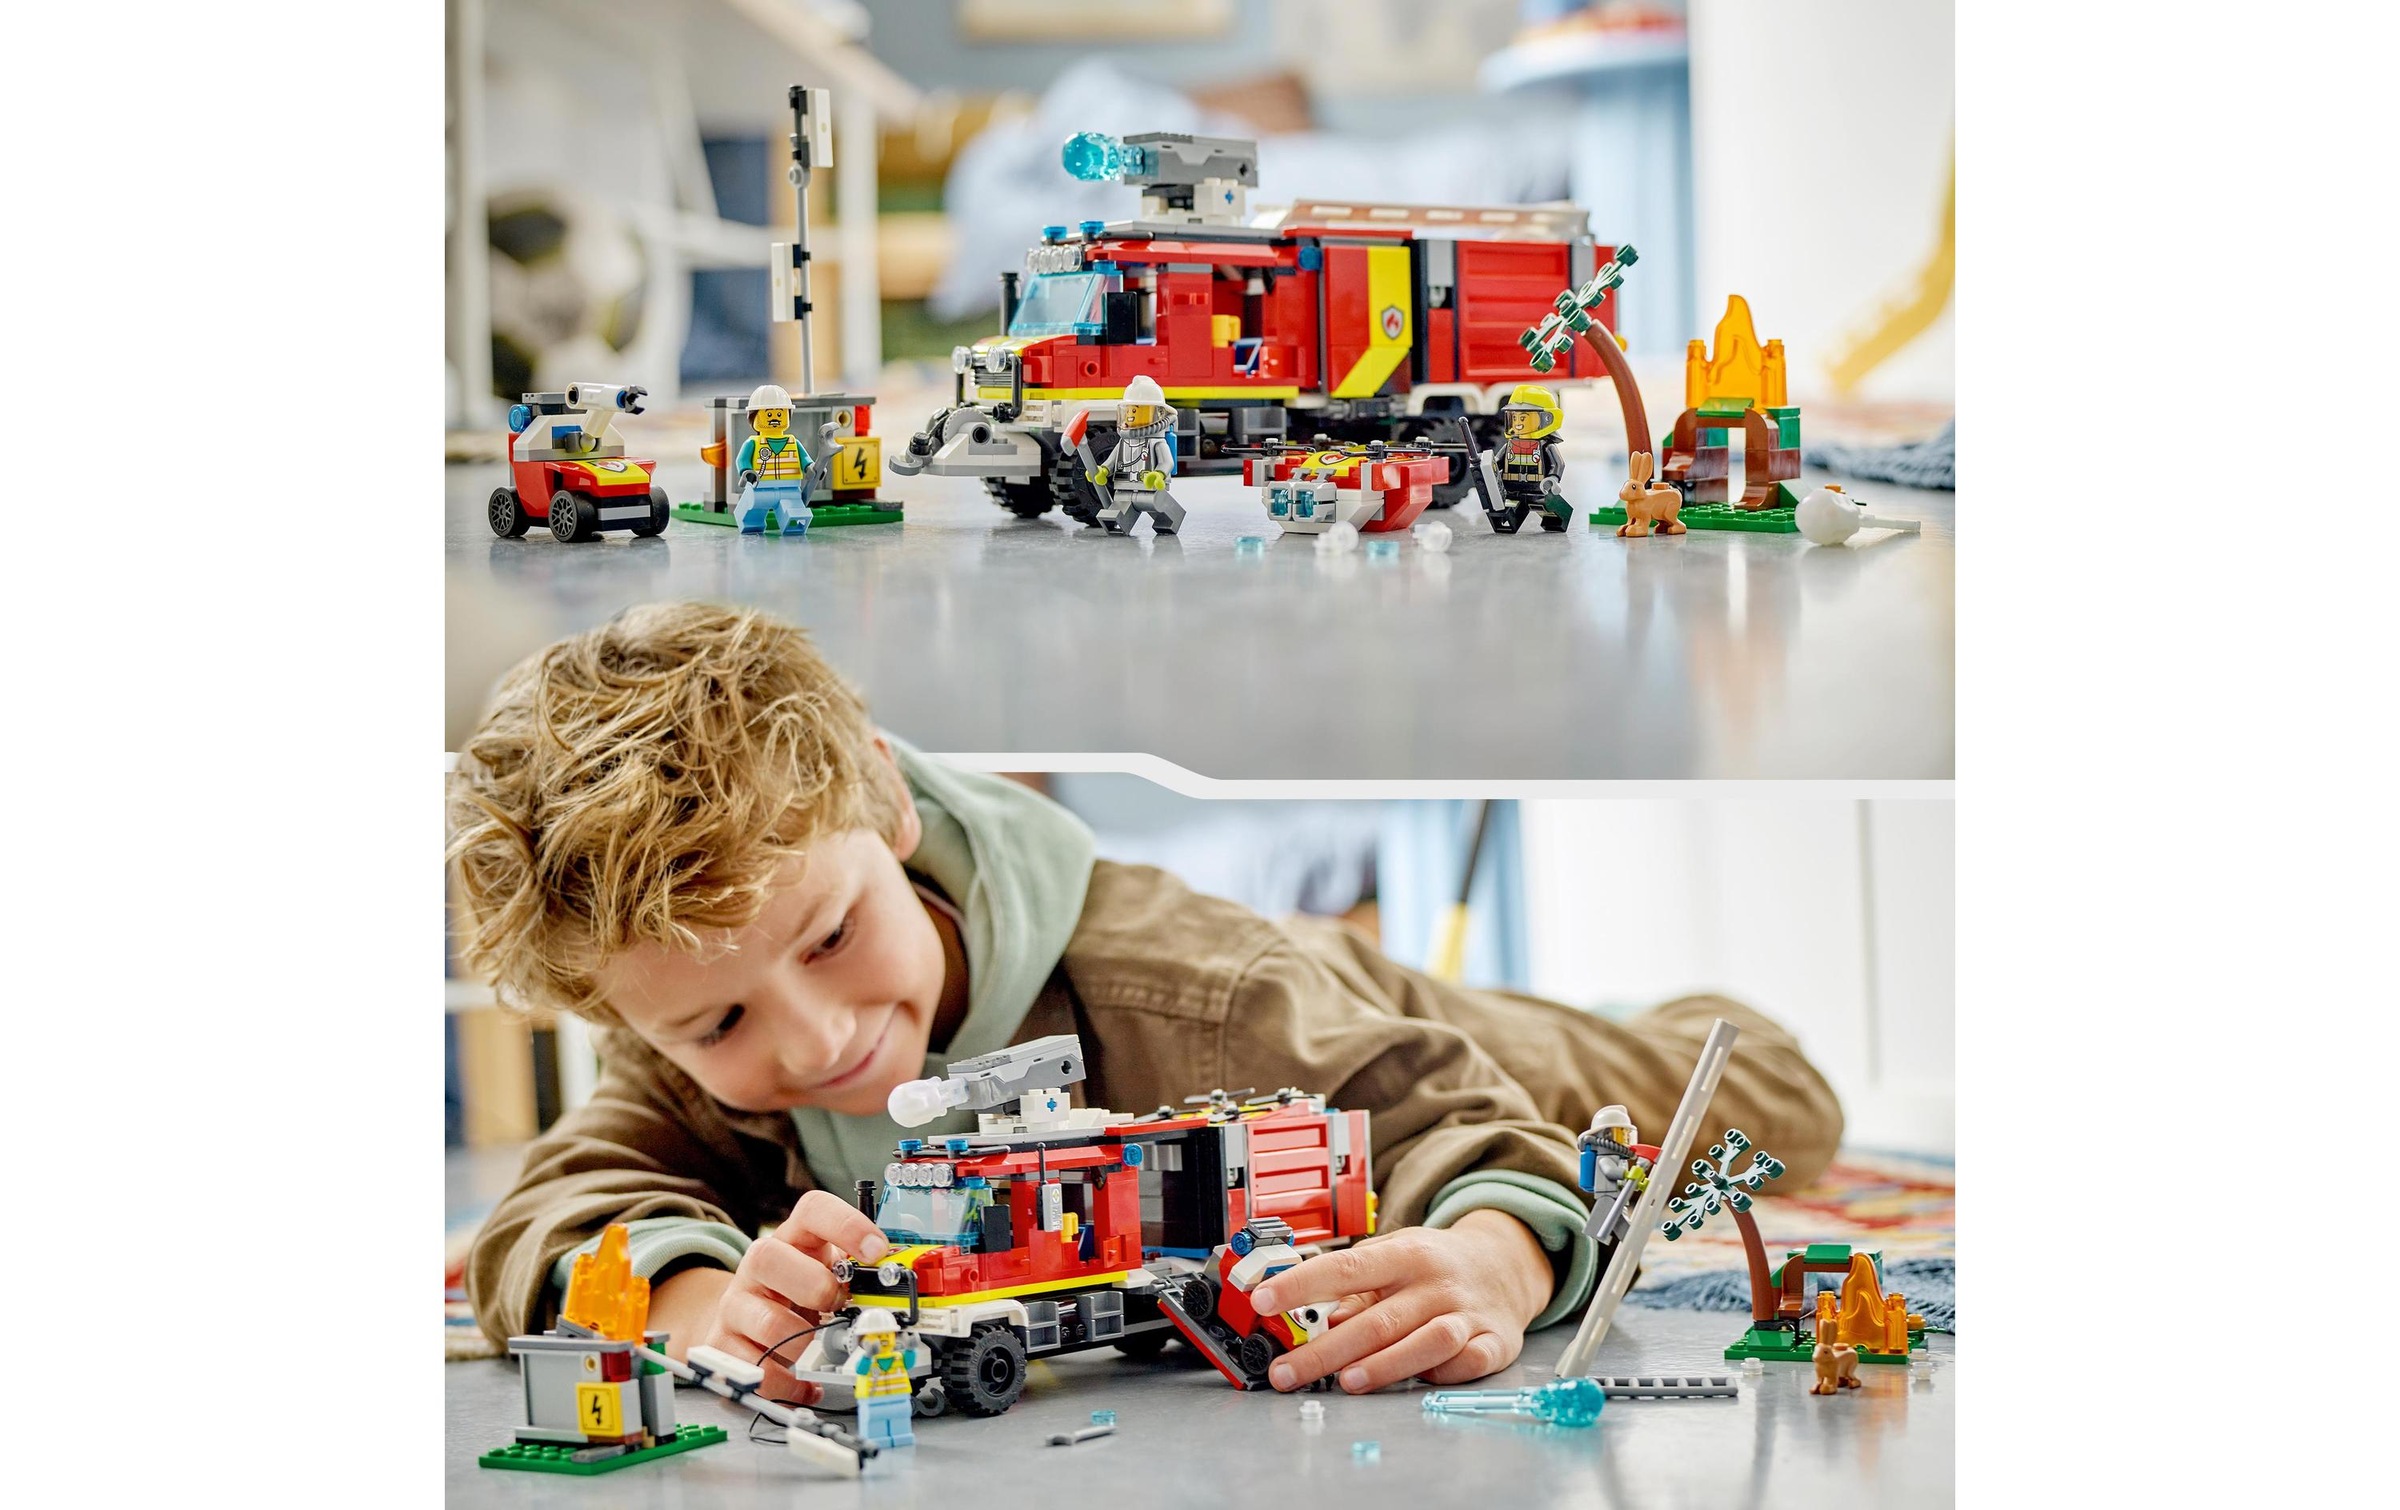 LEGO® Konstruktionsspielsteine »Einsatzleitwagen der Feuerwehr«, (502 St.)